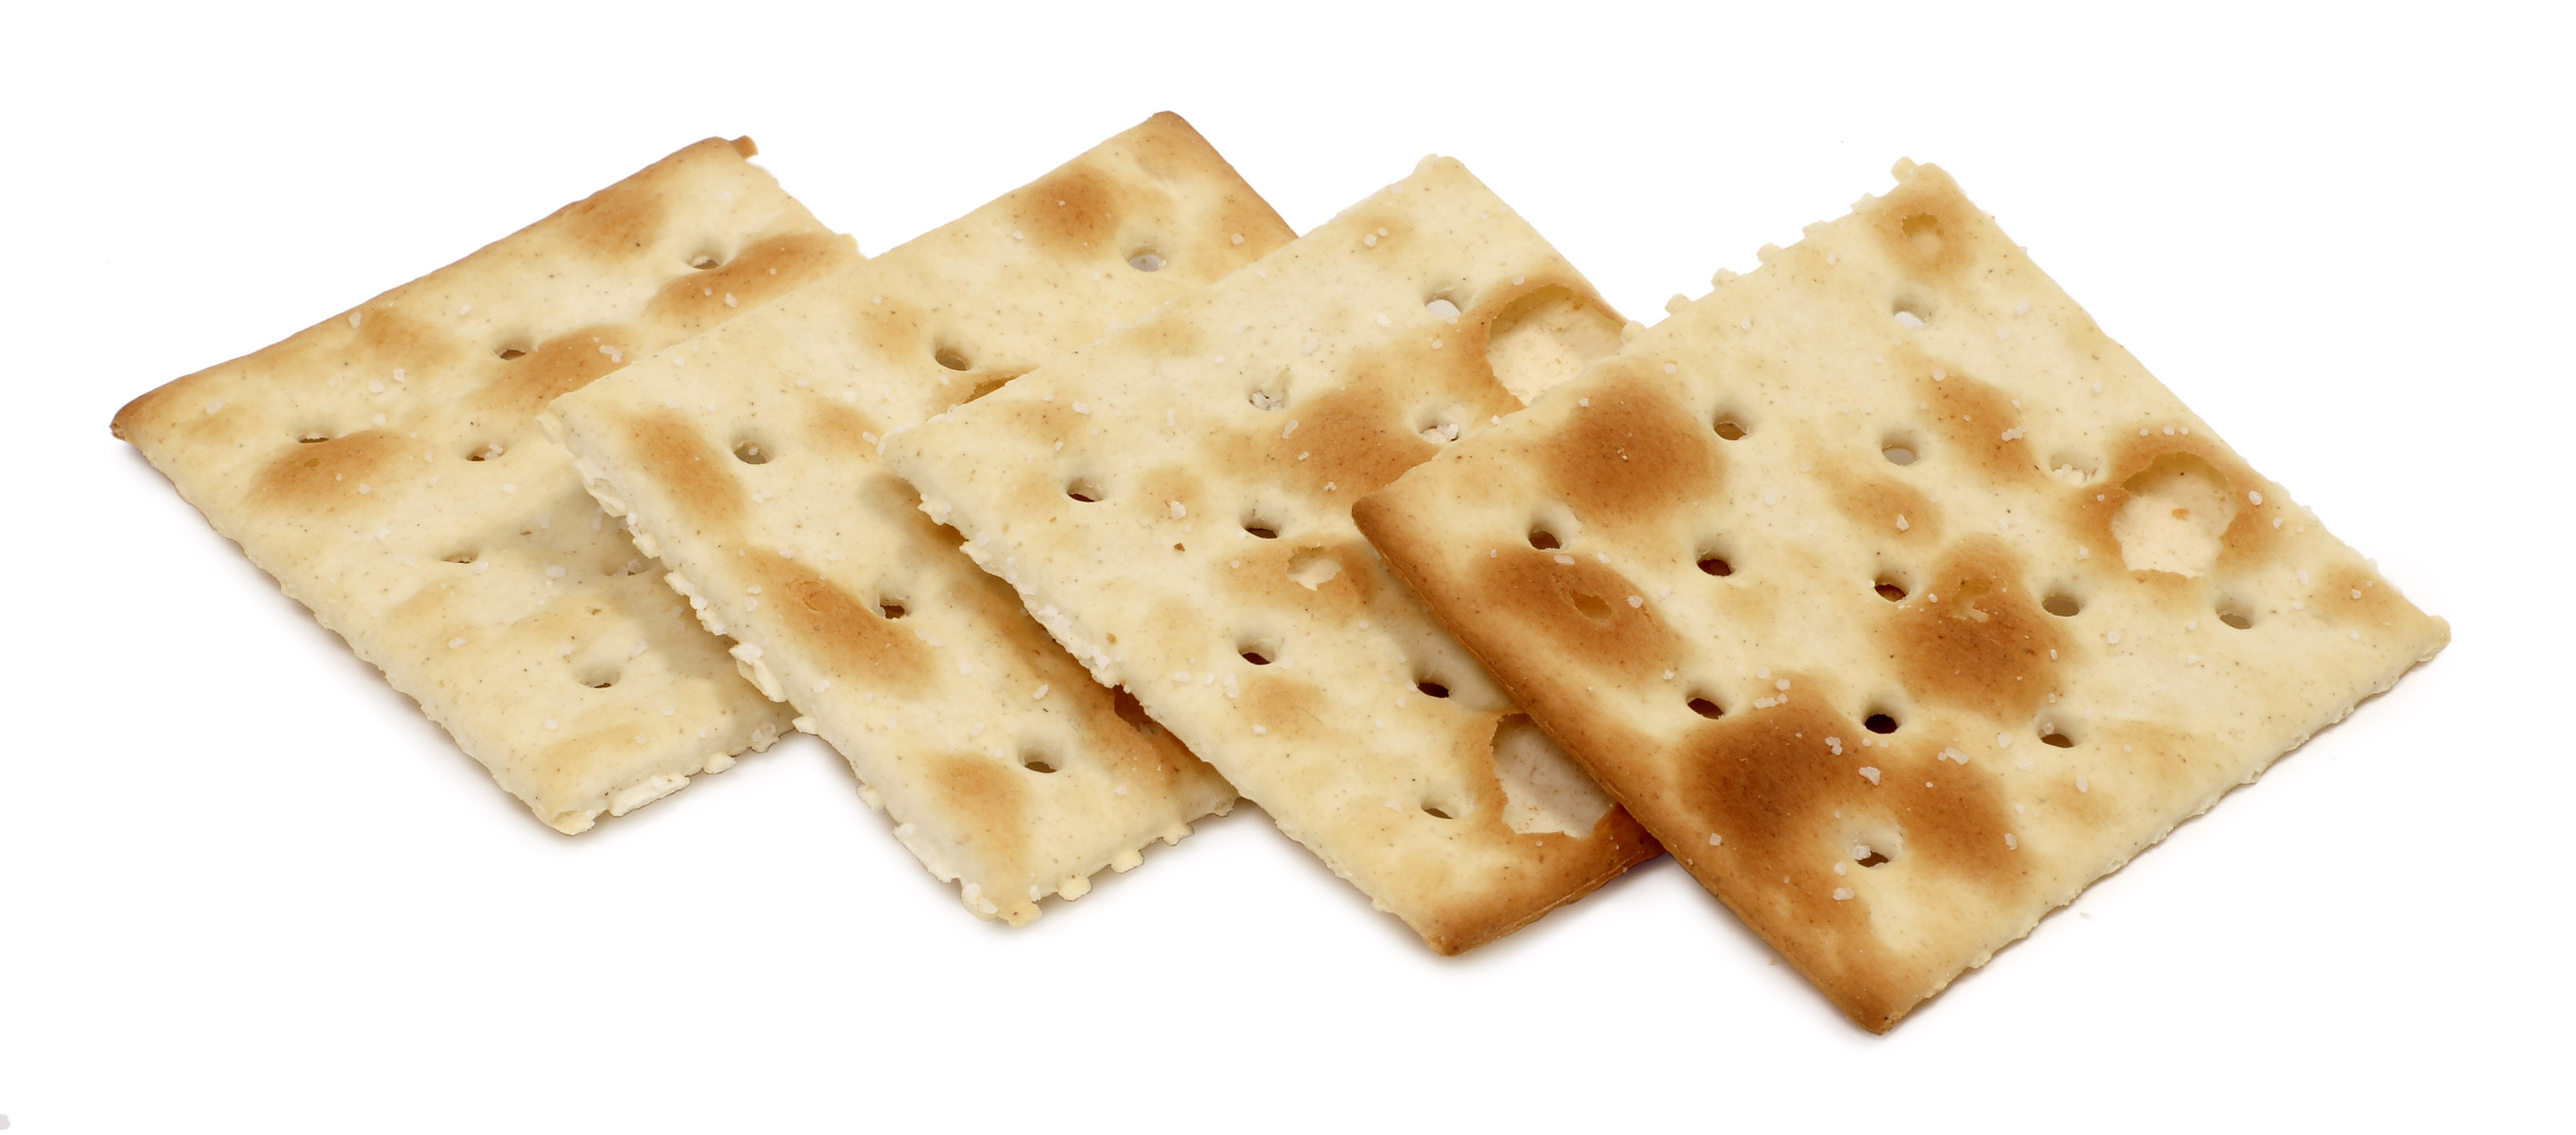 Tutti i crackers hanno dei buchi: c’è un motivo ben preciso